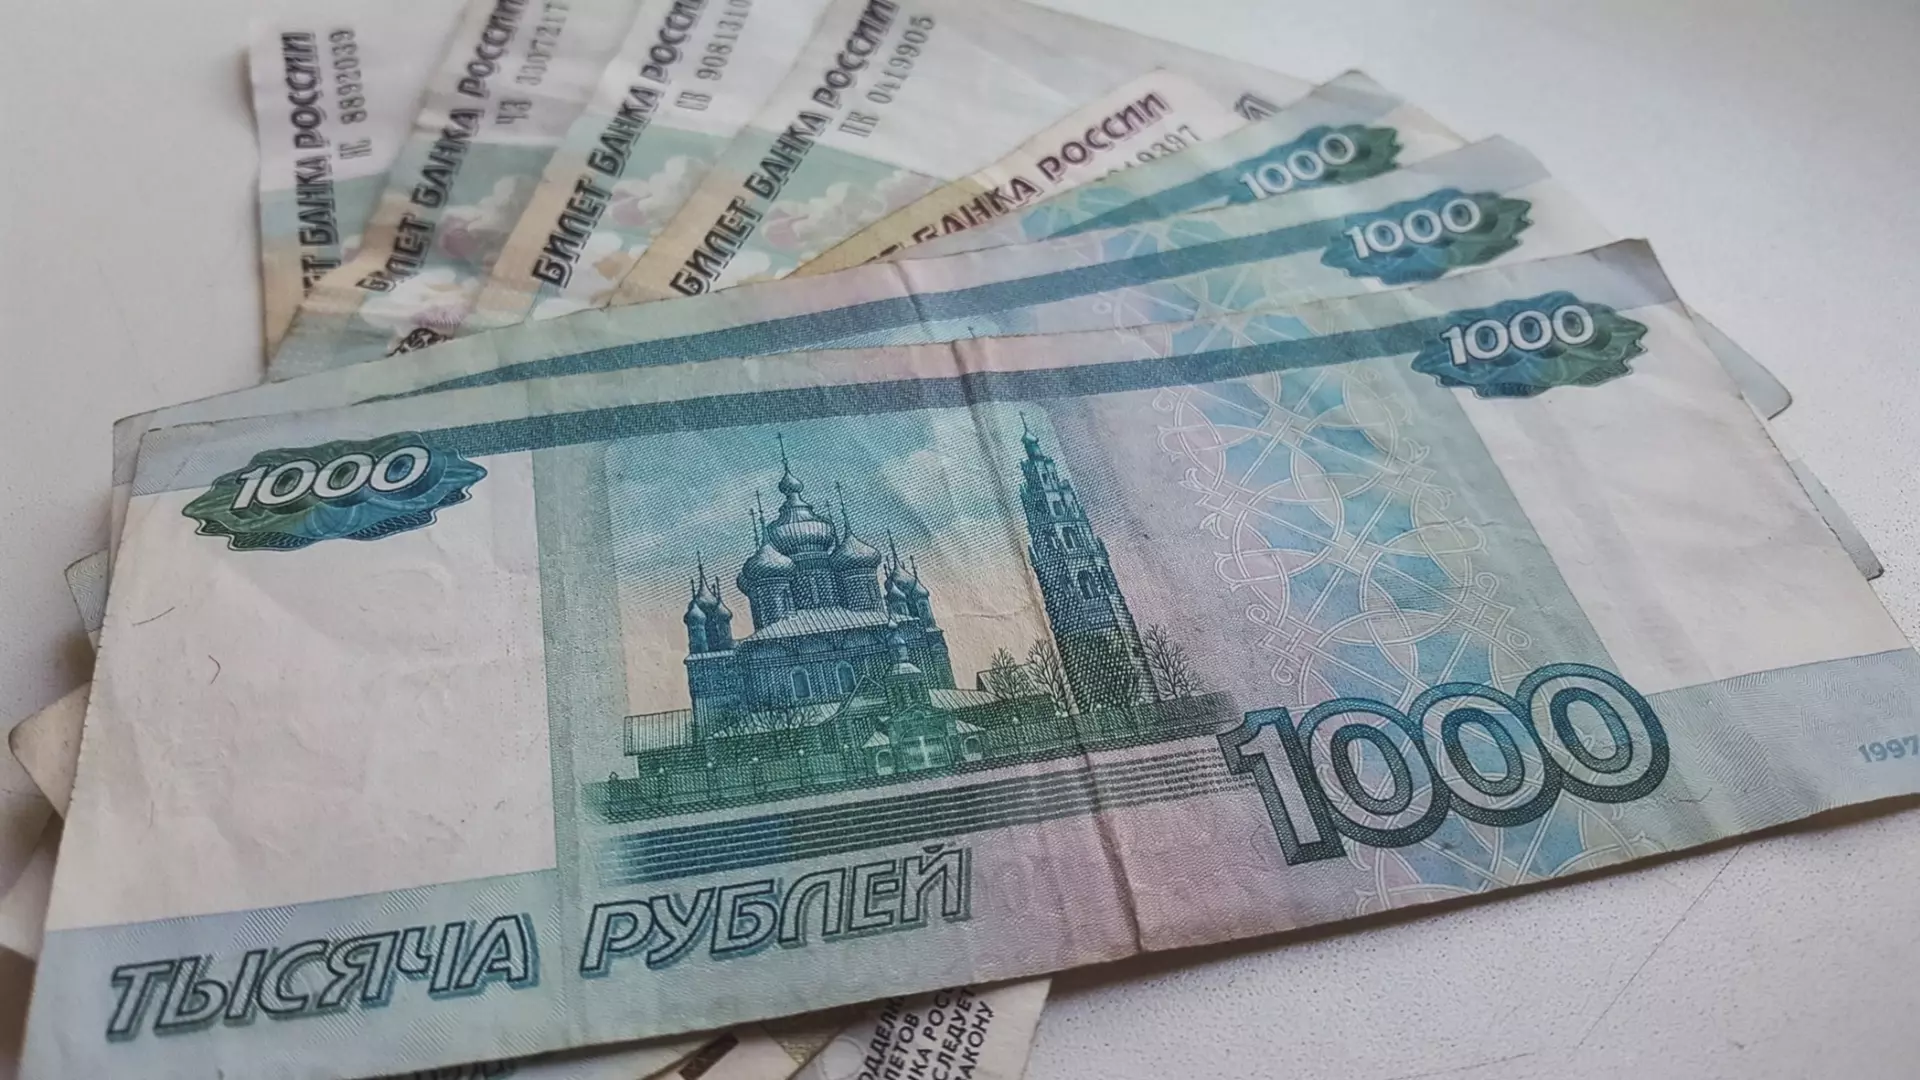 Достопримечательности Нижнего Новгорода могут появиться на банкноте 